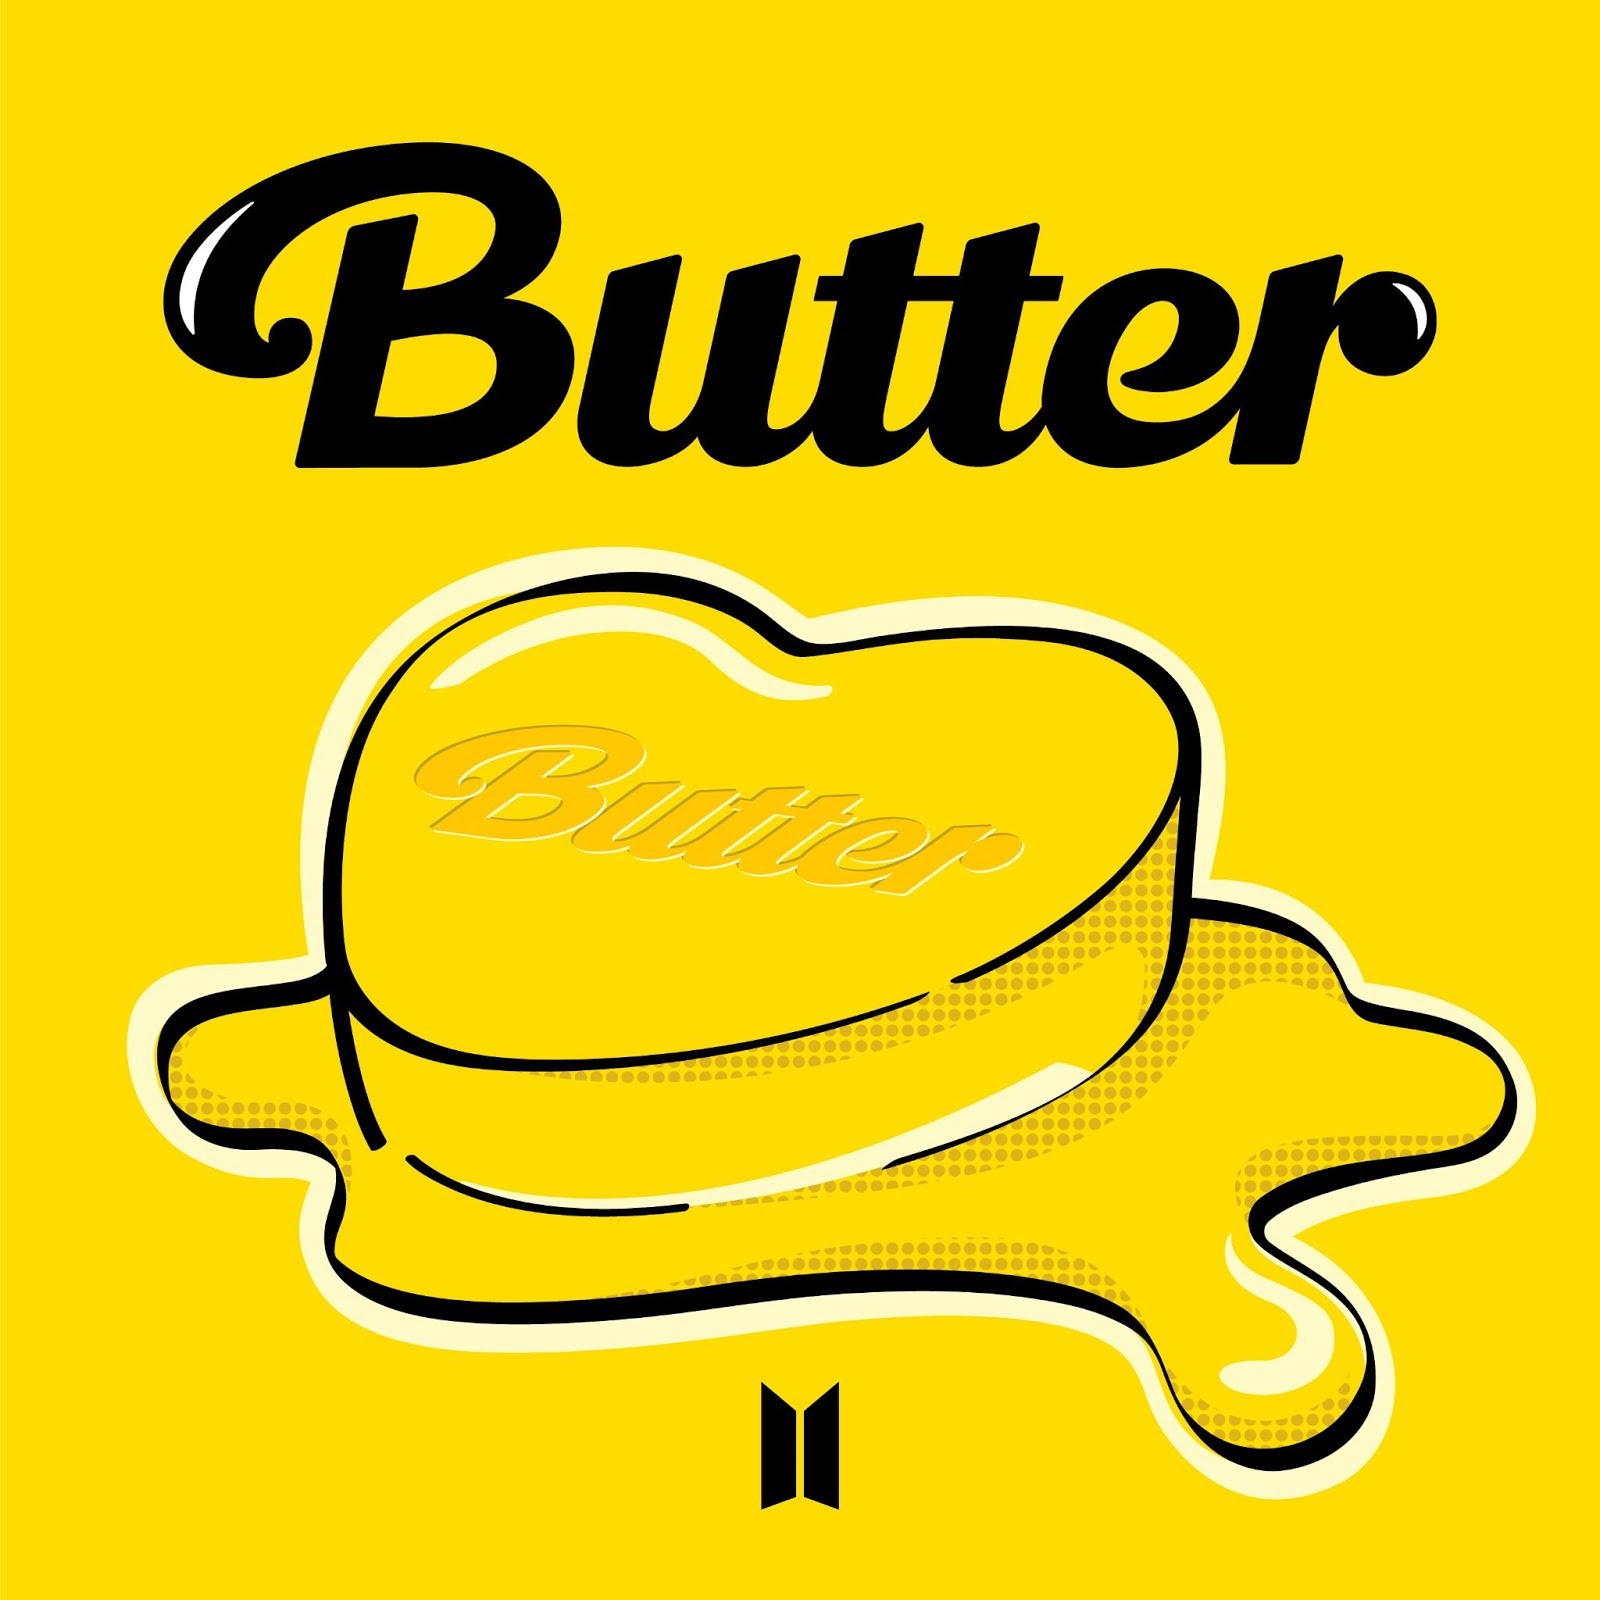 cirkulation plejeforældre Teenageår Three Versions Of BTS' "Butter" Appear In Top 5 On US iTunes Sales Chart